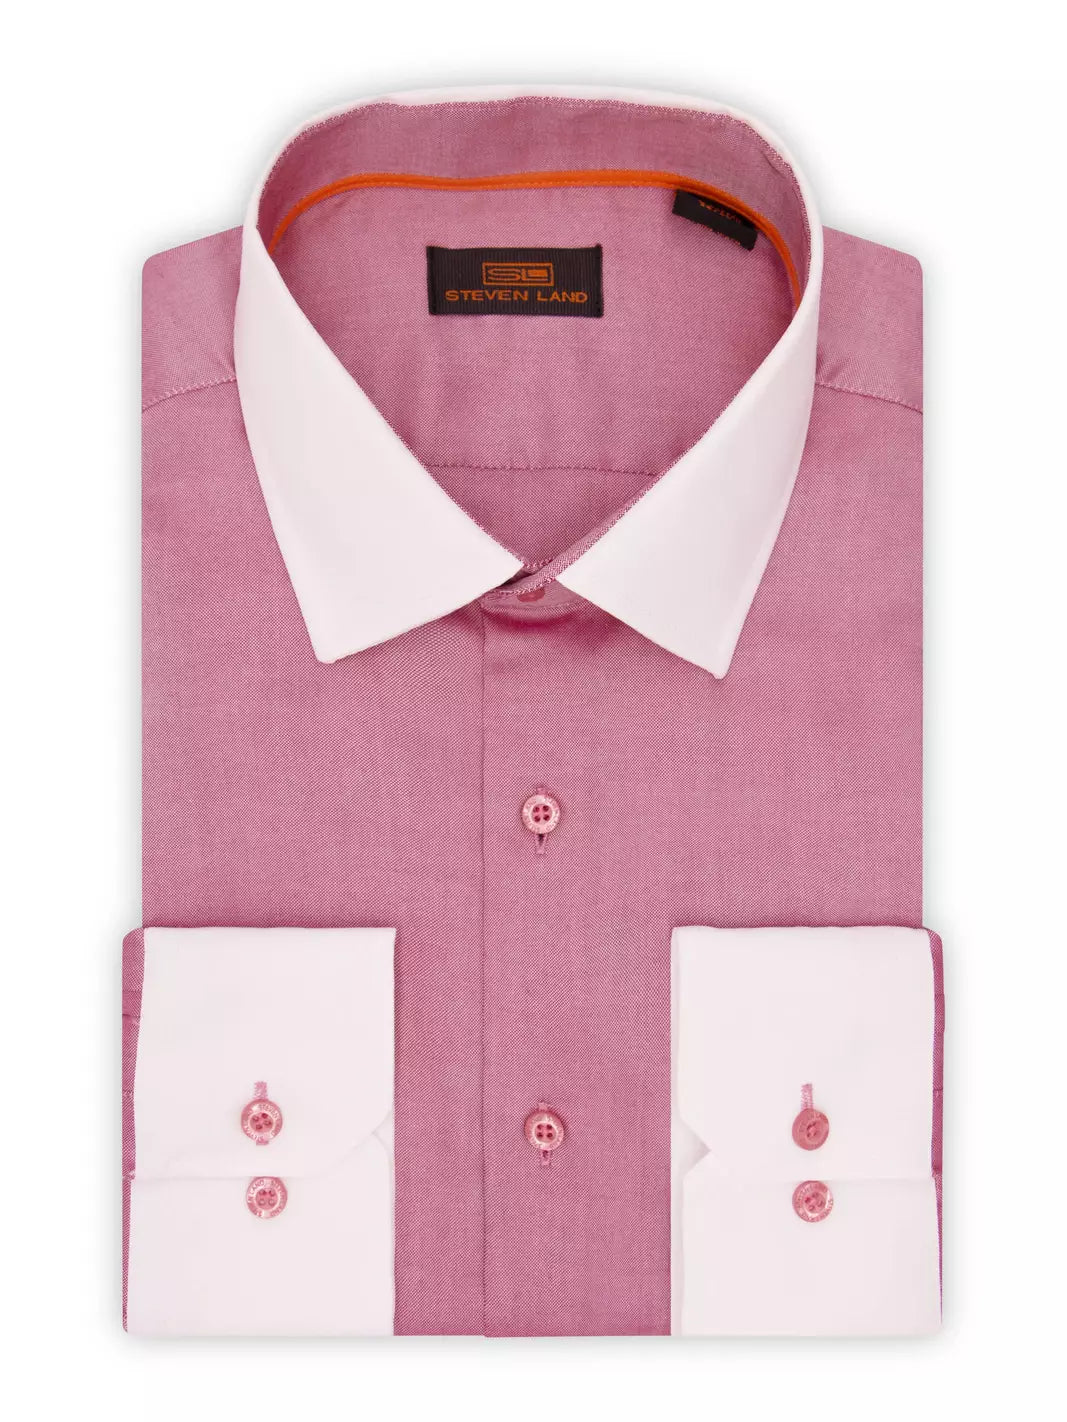 Steven Land SHIRTS Steven Land Mens Red 100% Cotton Contrast Cuff &amp; Spread Collar Dress Shirt